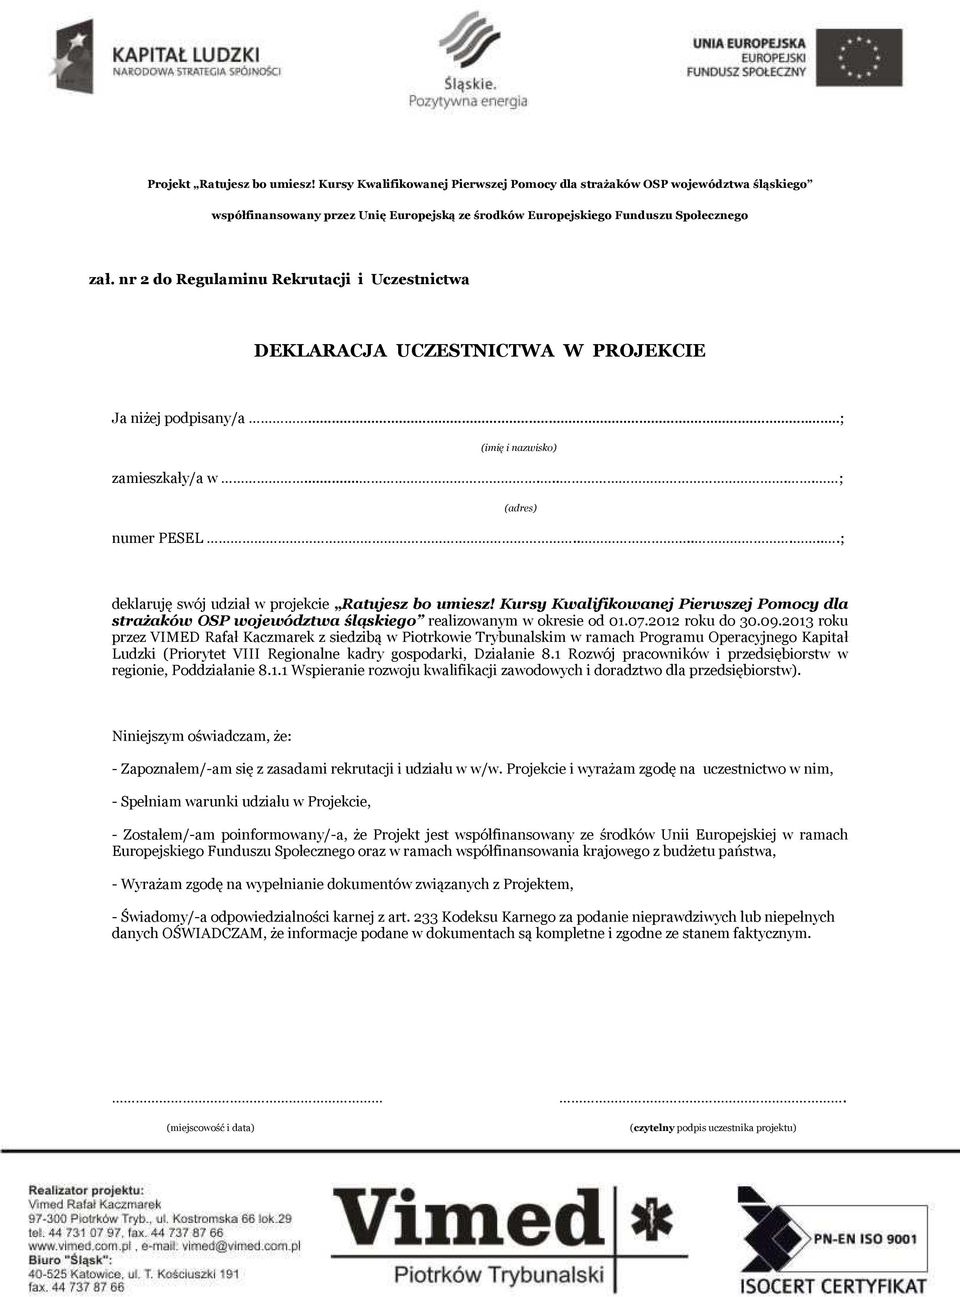 .......; (adres) deklaruję swój udział w projekcie Ratujesz bo umiesz! Kursy Kwalifikowanej Pierwszej Pomocy dla strażaków OSP województwa śląskiego realizowanym w okresie od 01.07.2012 roku do 30.09.